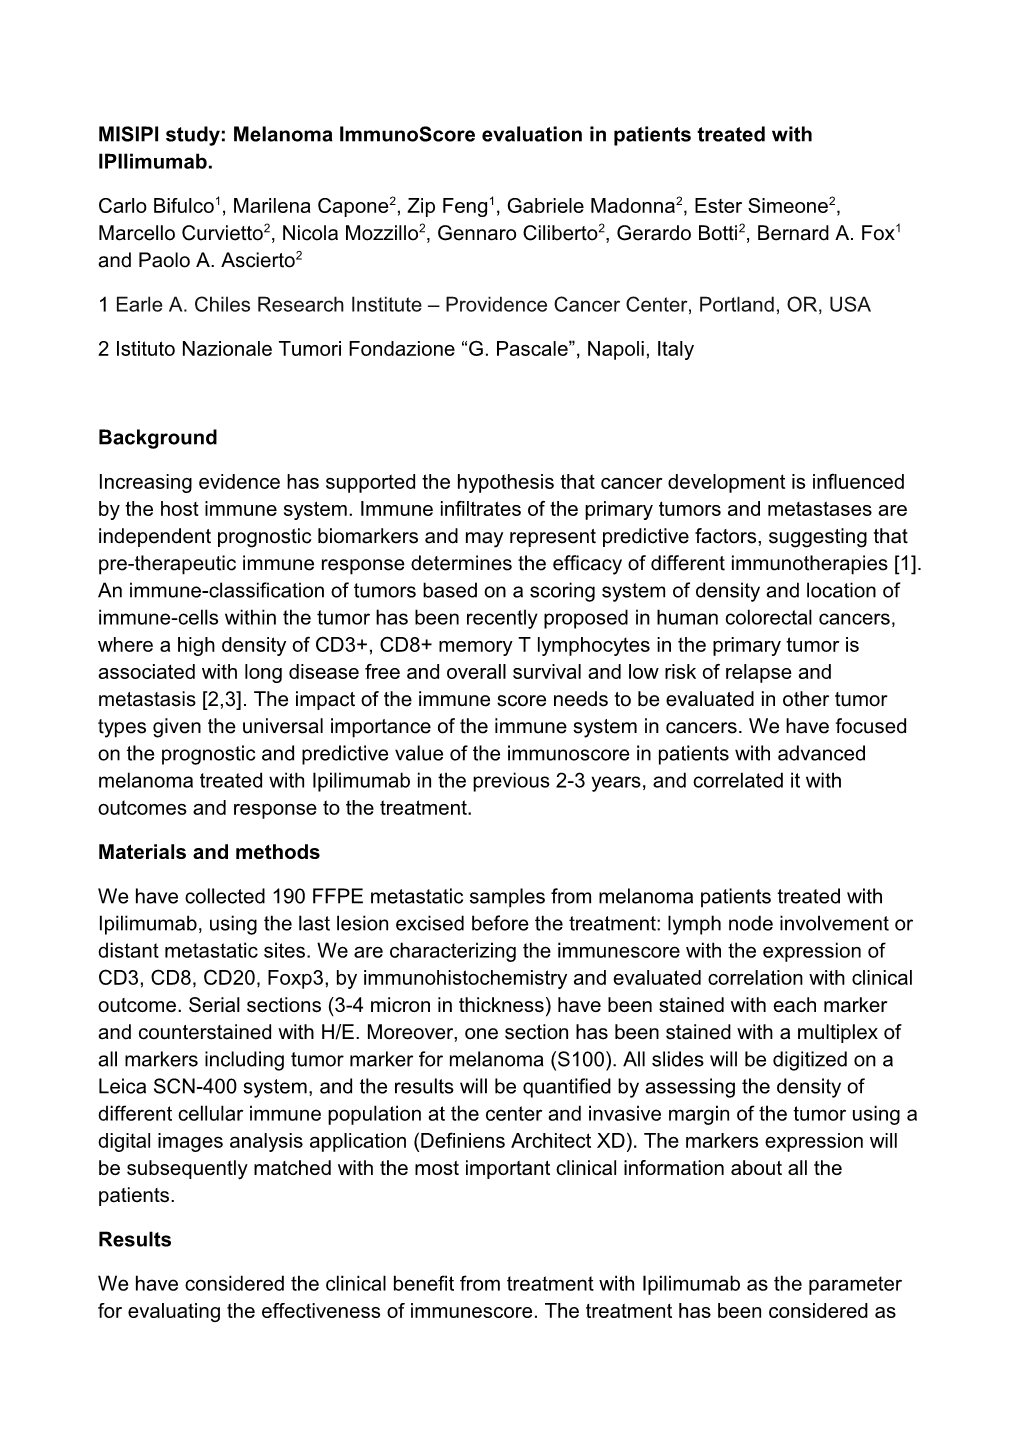 MISIPI Study: Melanoma Immunoscore Evaluation in Patients Treated with Ipilimumab